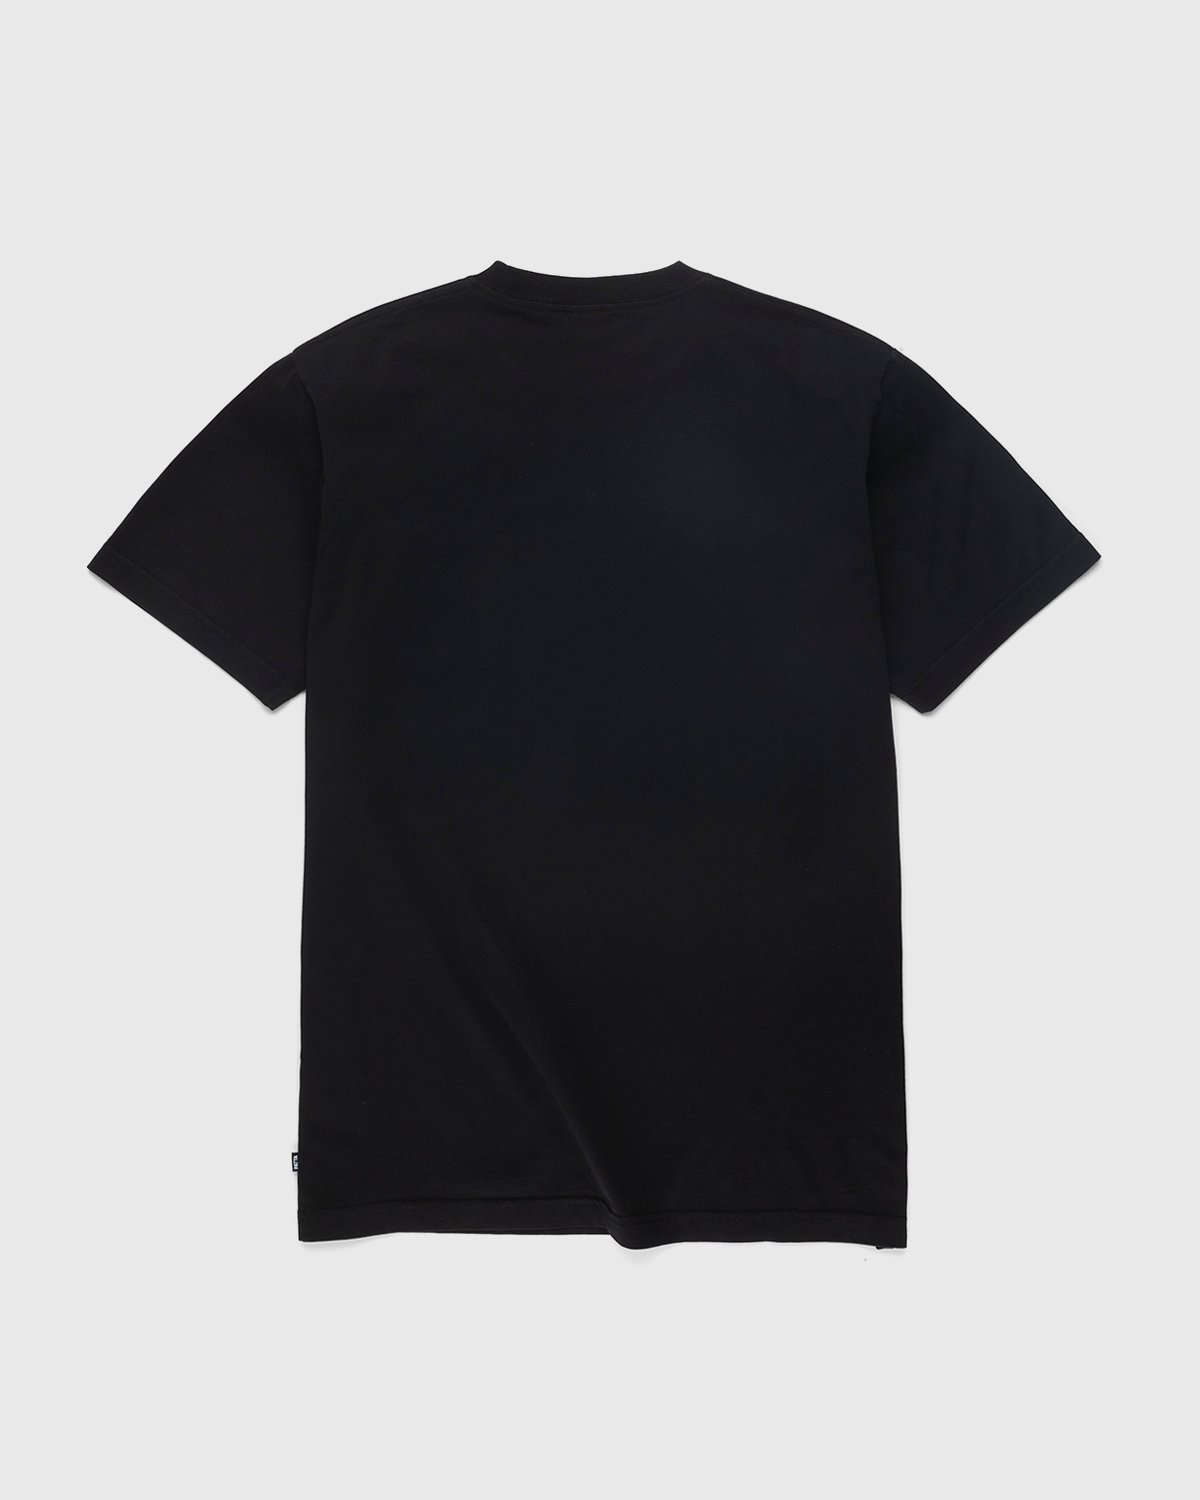 Patta - Basic Washed Pocket T-Shirt Black - Clothing - Black - Image 2